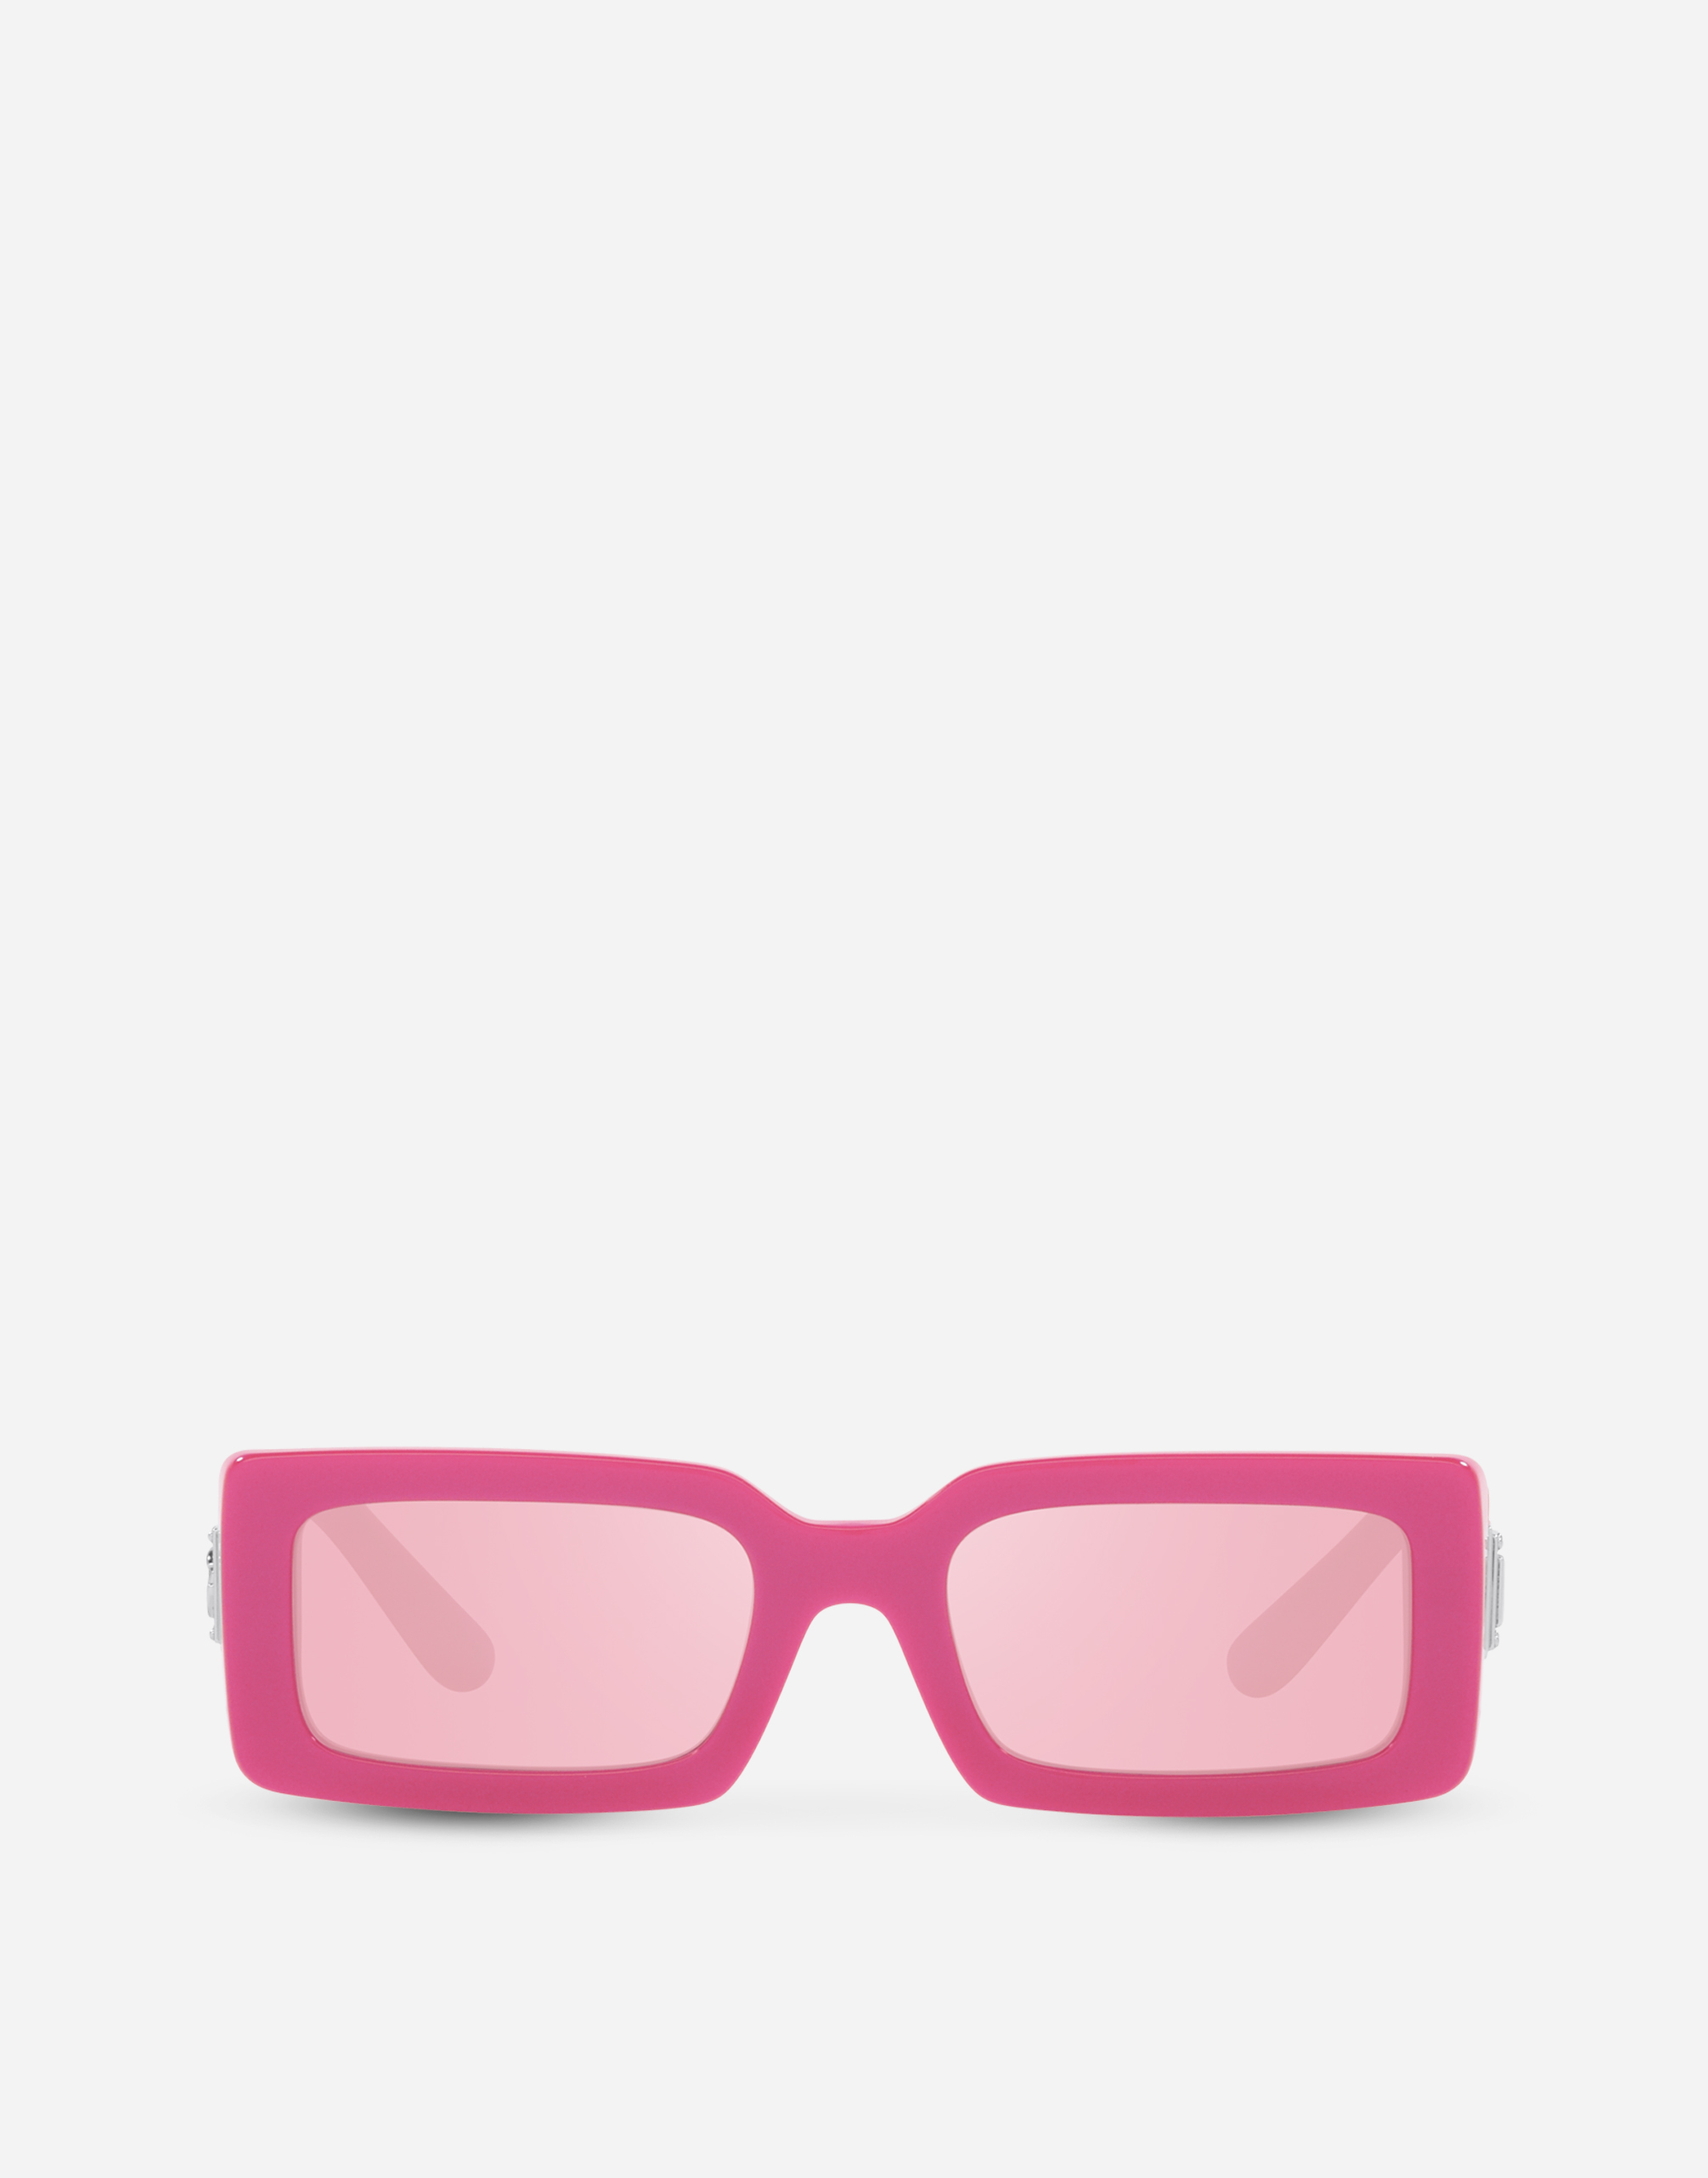 DG Bella sunglasses in Pink Metallic